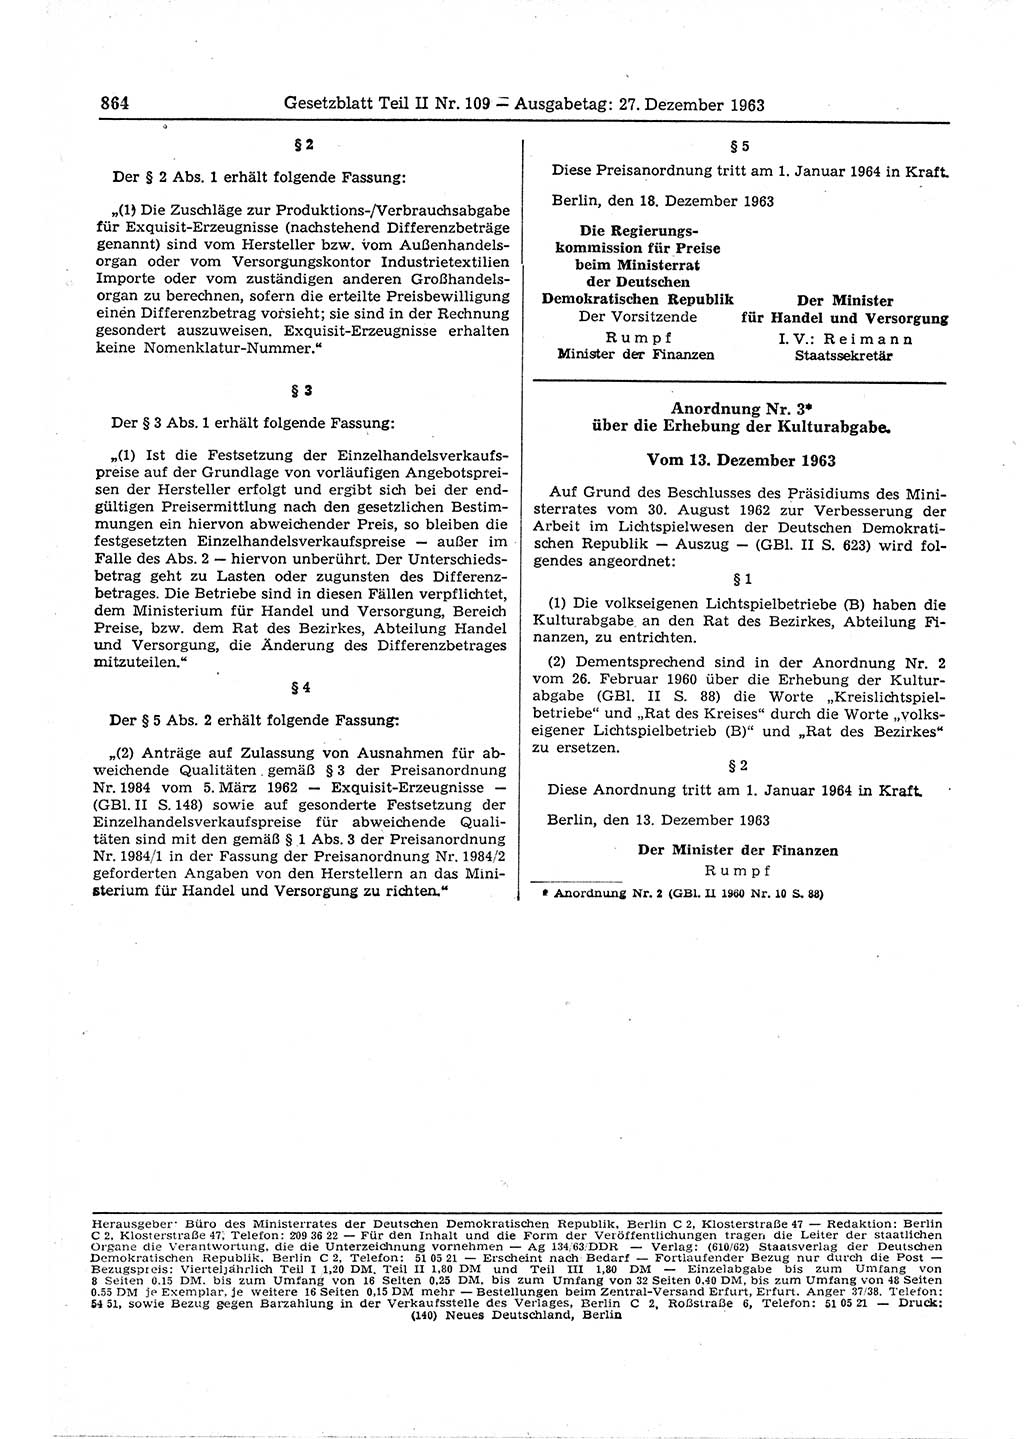 Gesetzblatt (GBl.) der Deutschen Demokratischen Republik (DDR) Teil ⅠⅠ 1963, Seite 864 (GBl. DDR ⅠⅠ 1963, S. 864)